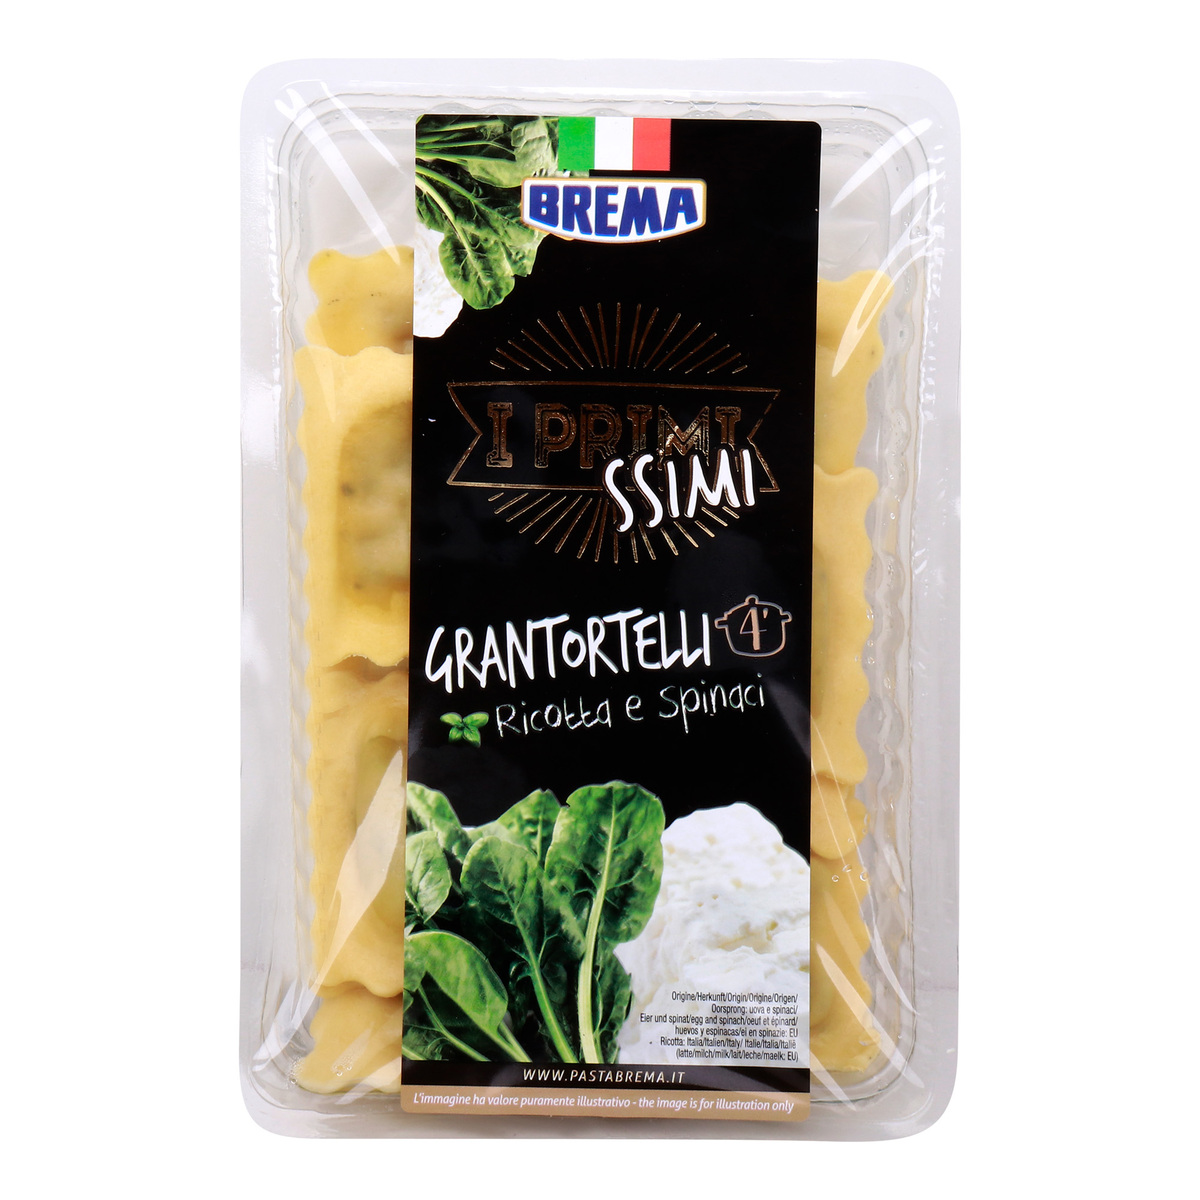 Brema Grantortelli Ricotta & Spinach, 250 g